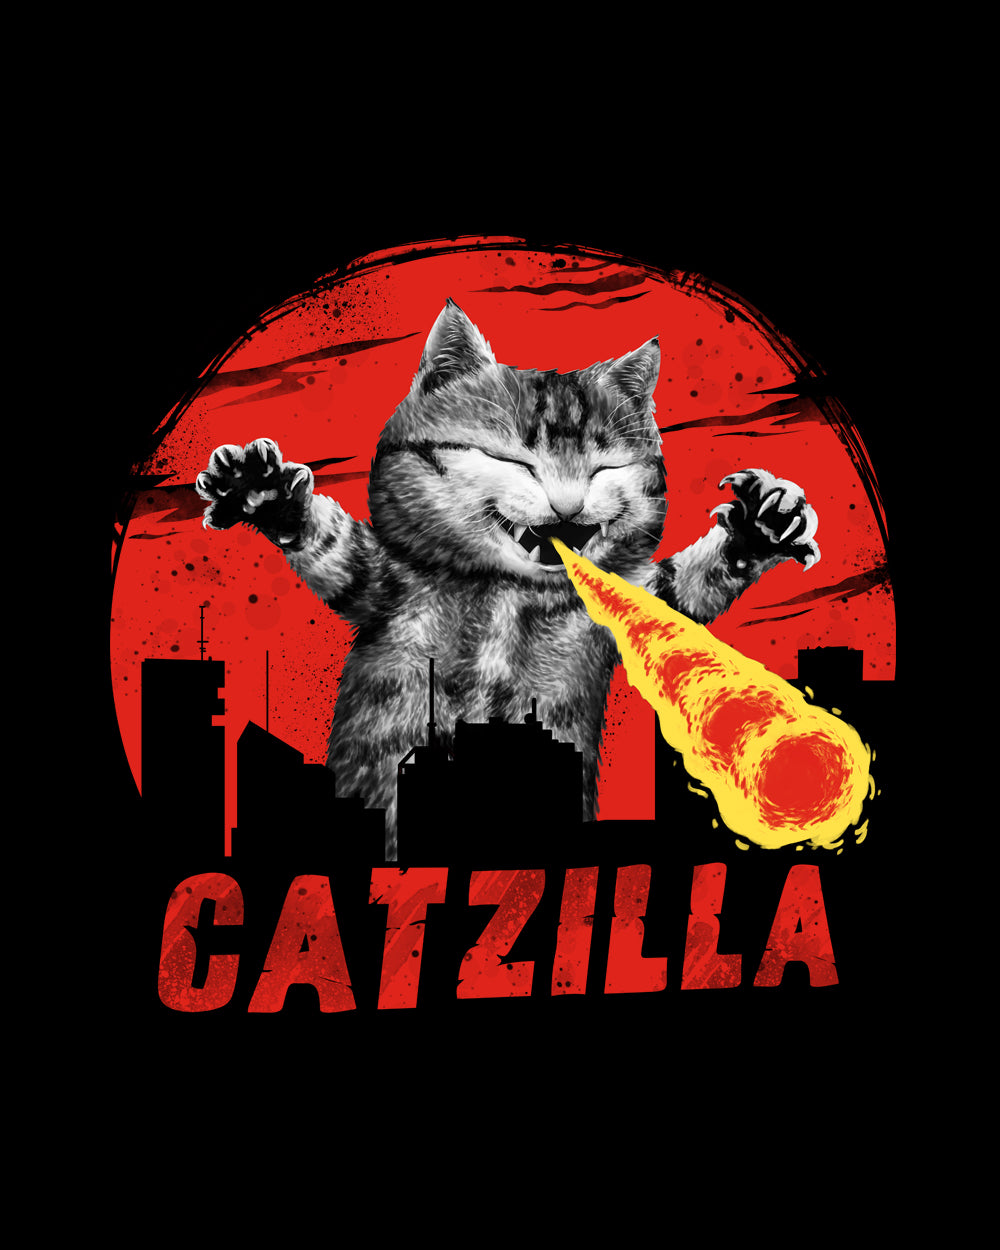 Catzilla Fire Sweater Australia Online #colour_black